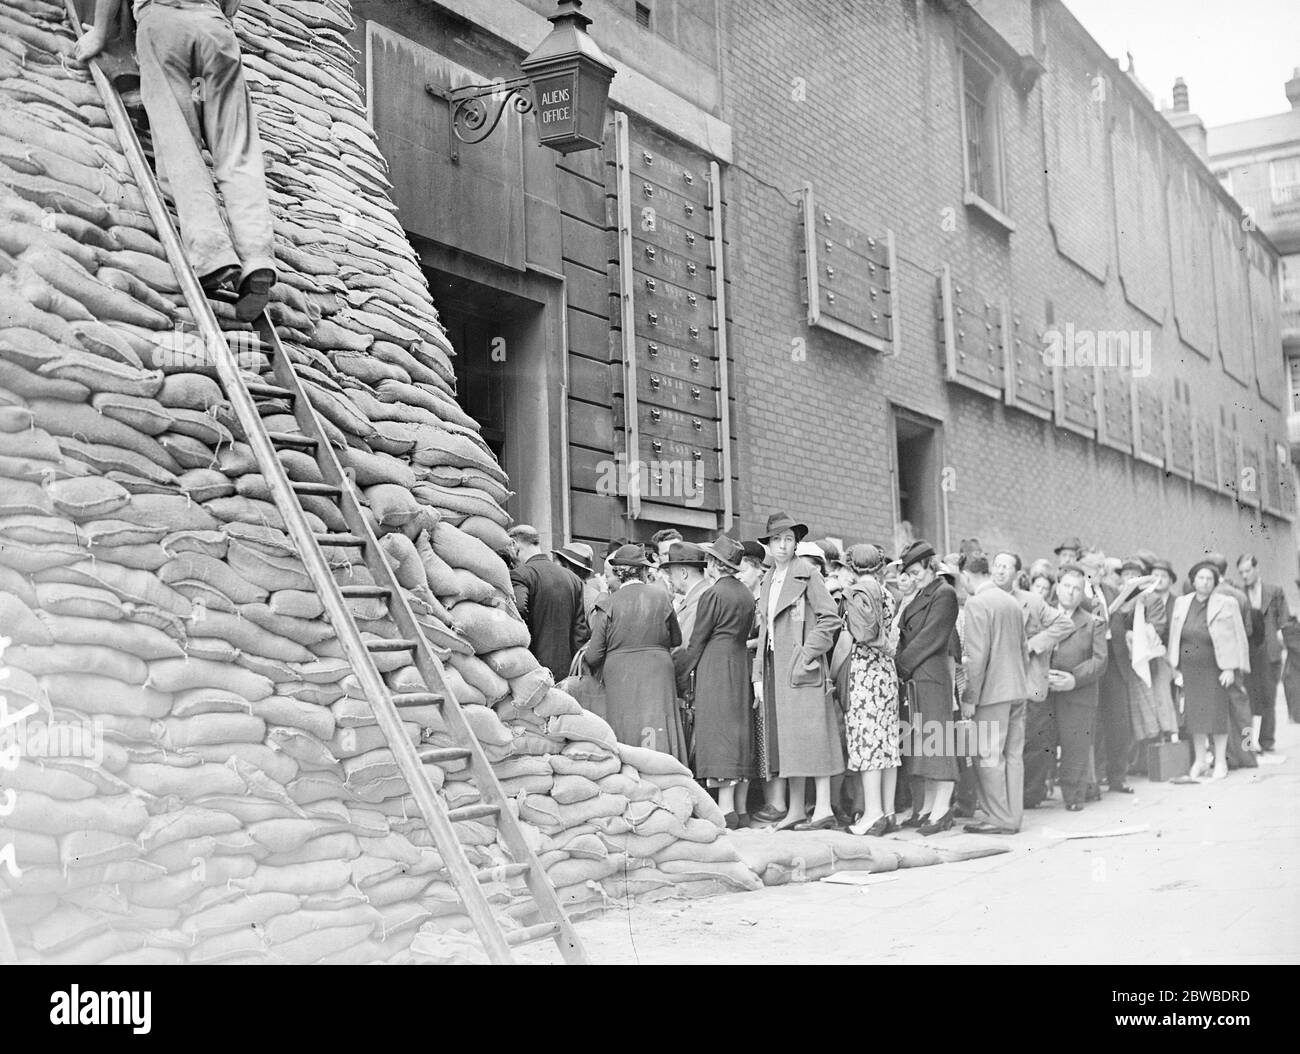 Personnes de nationalité étrangère attendant de s'inscrire au bureau des étrangers, rue Bow, 4 septembre 1939 Banque D'Images